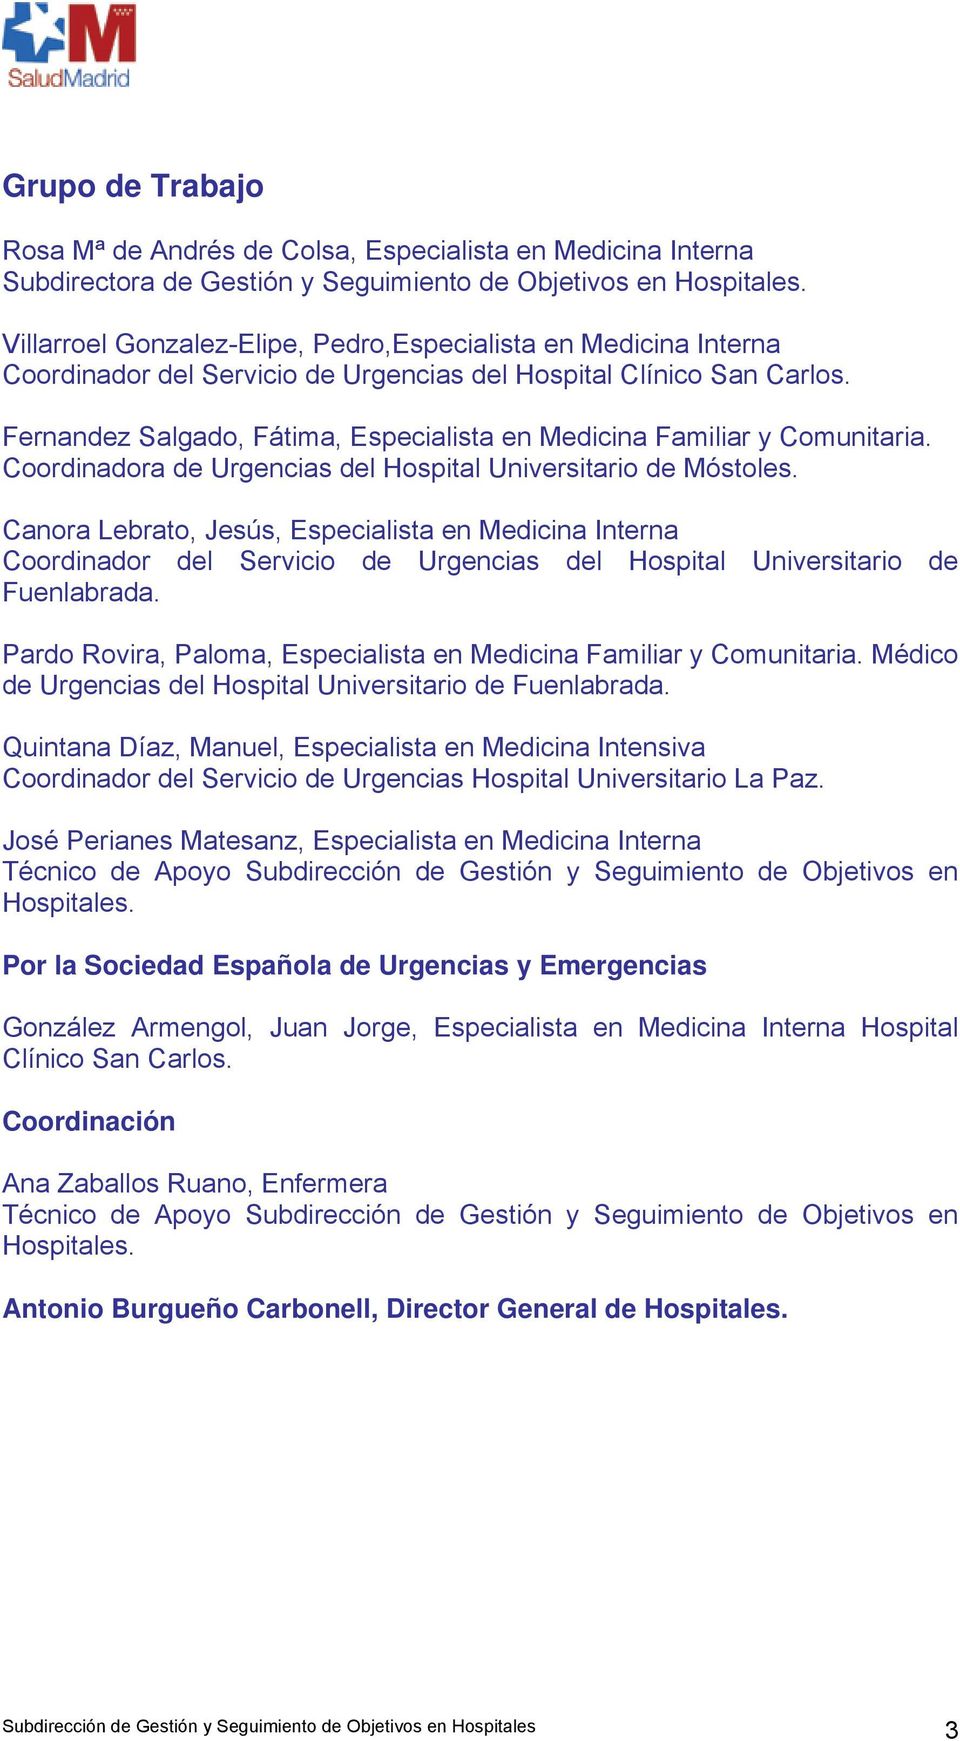 Fernandez Salgado, Fátima, Especialista en Medicina Familiar y Comunitaria. Coordinadora de Urgencias del Hospital Universitario de Móstoles.